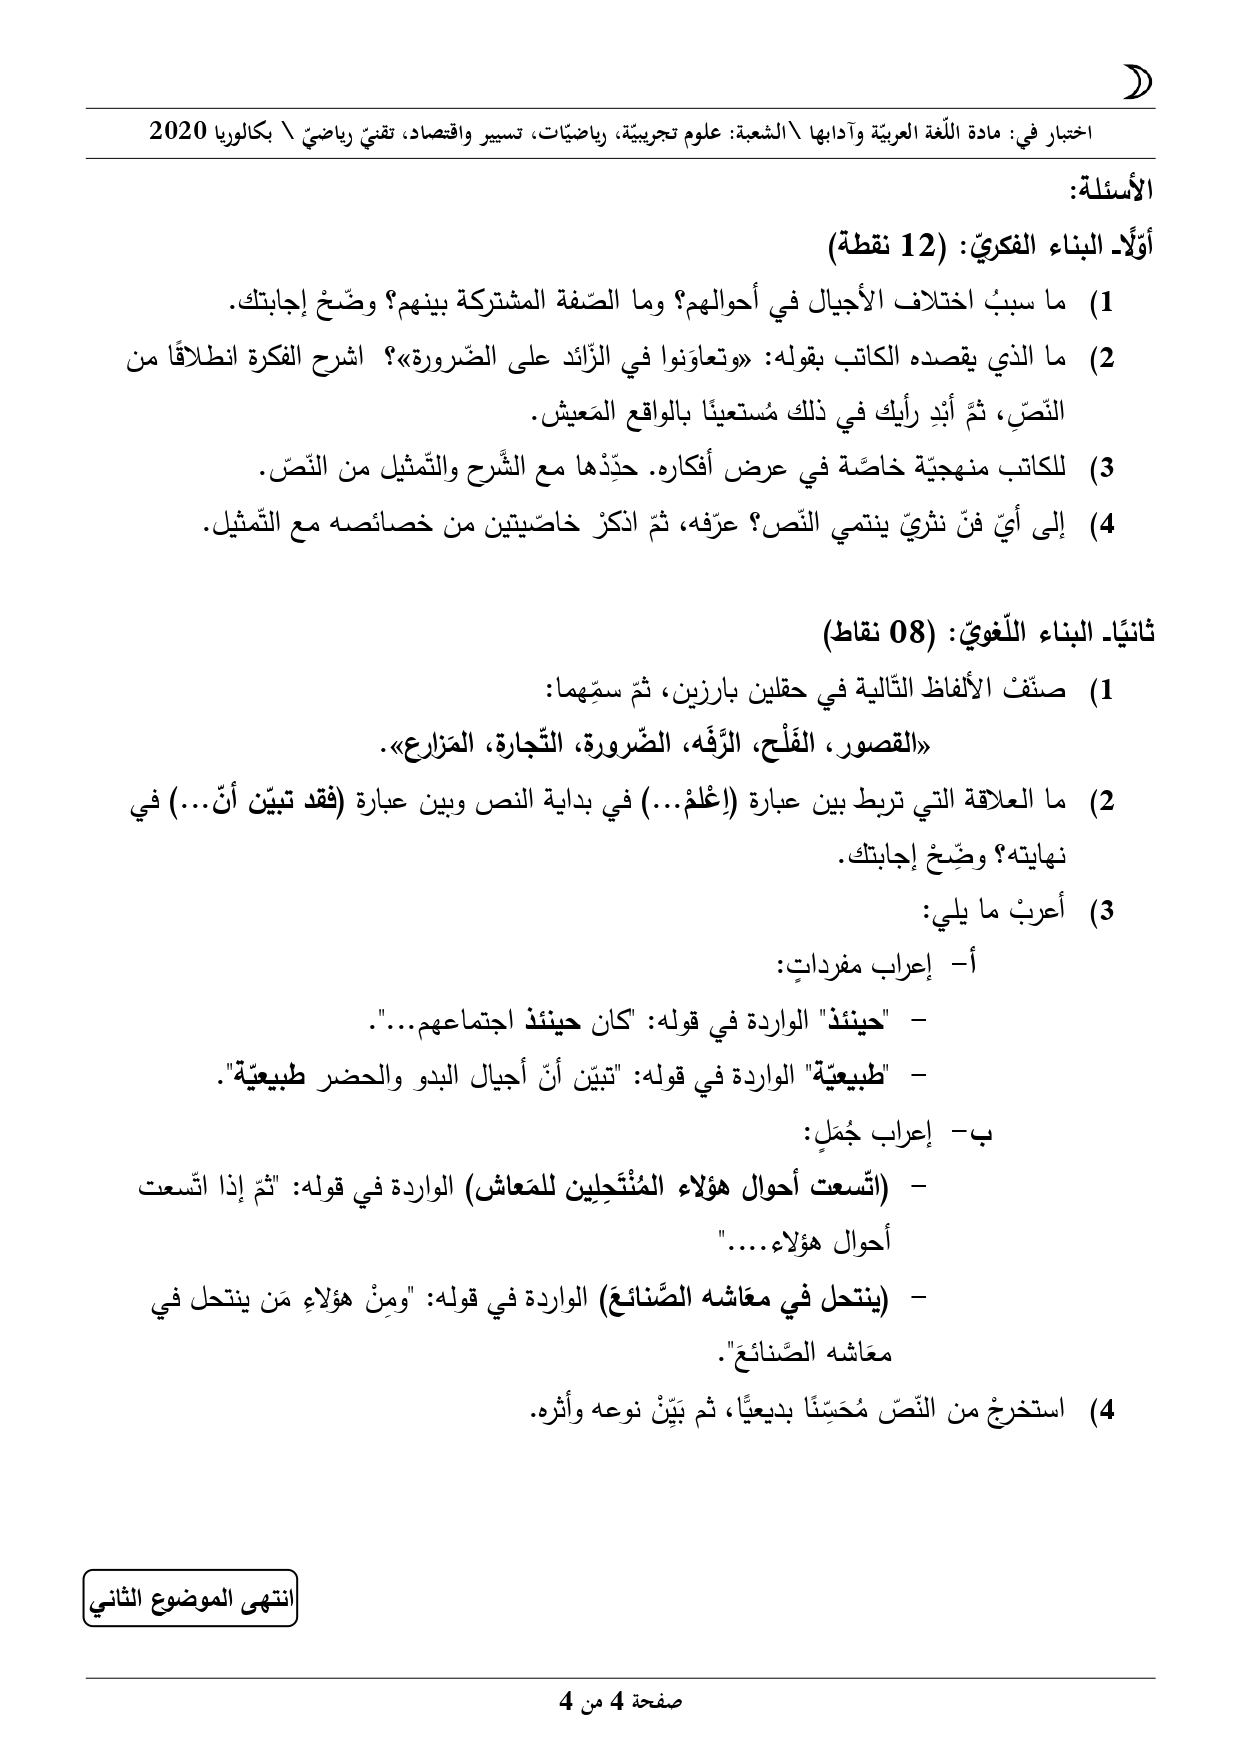 امتحان مادة اللغة العربية بكالوريا 2020